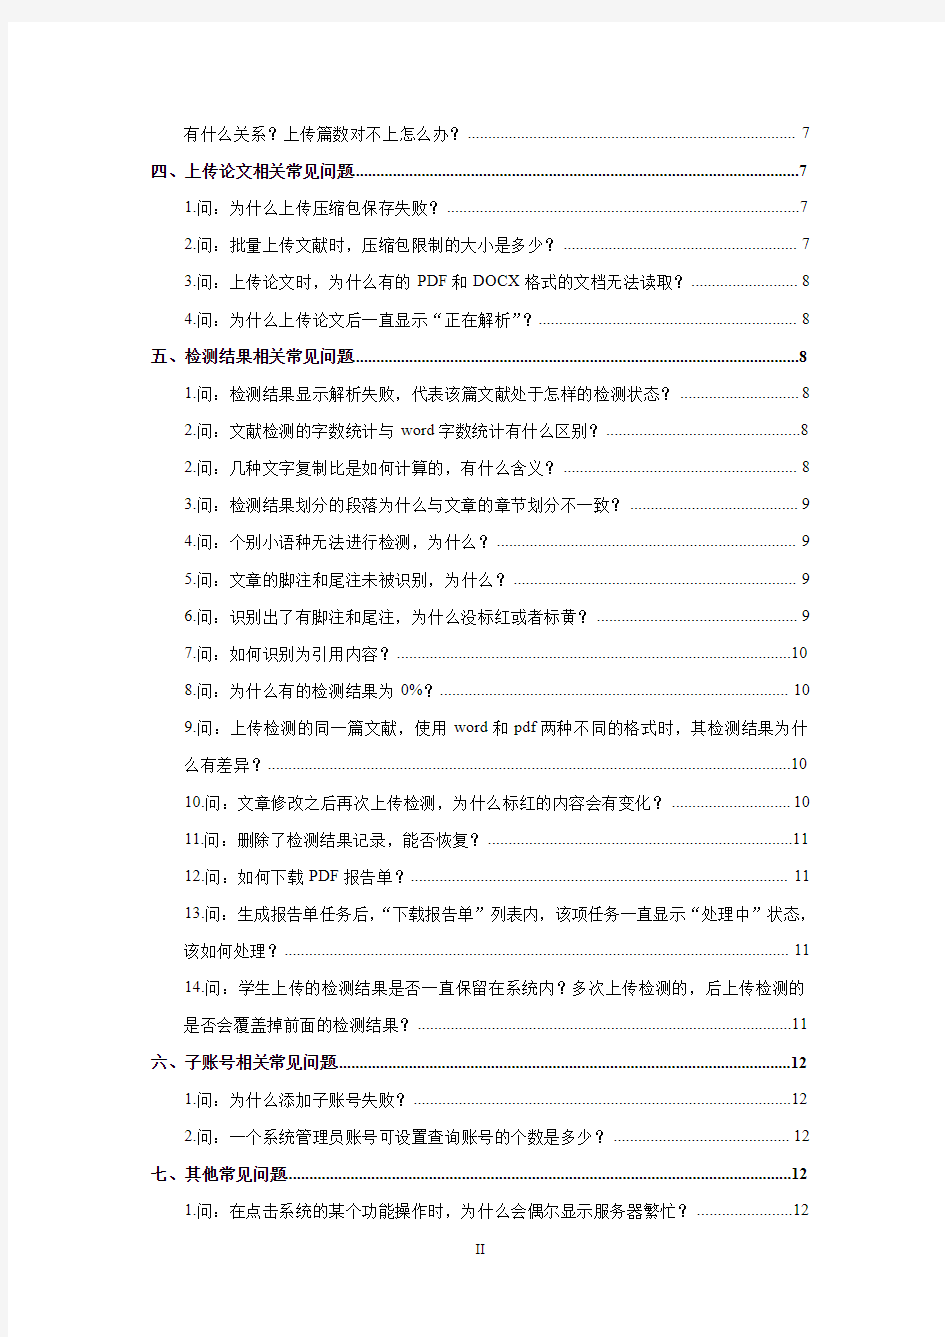 “中国知网”大学生论文管理系统 PMLC 常见问题解答